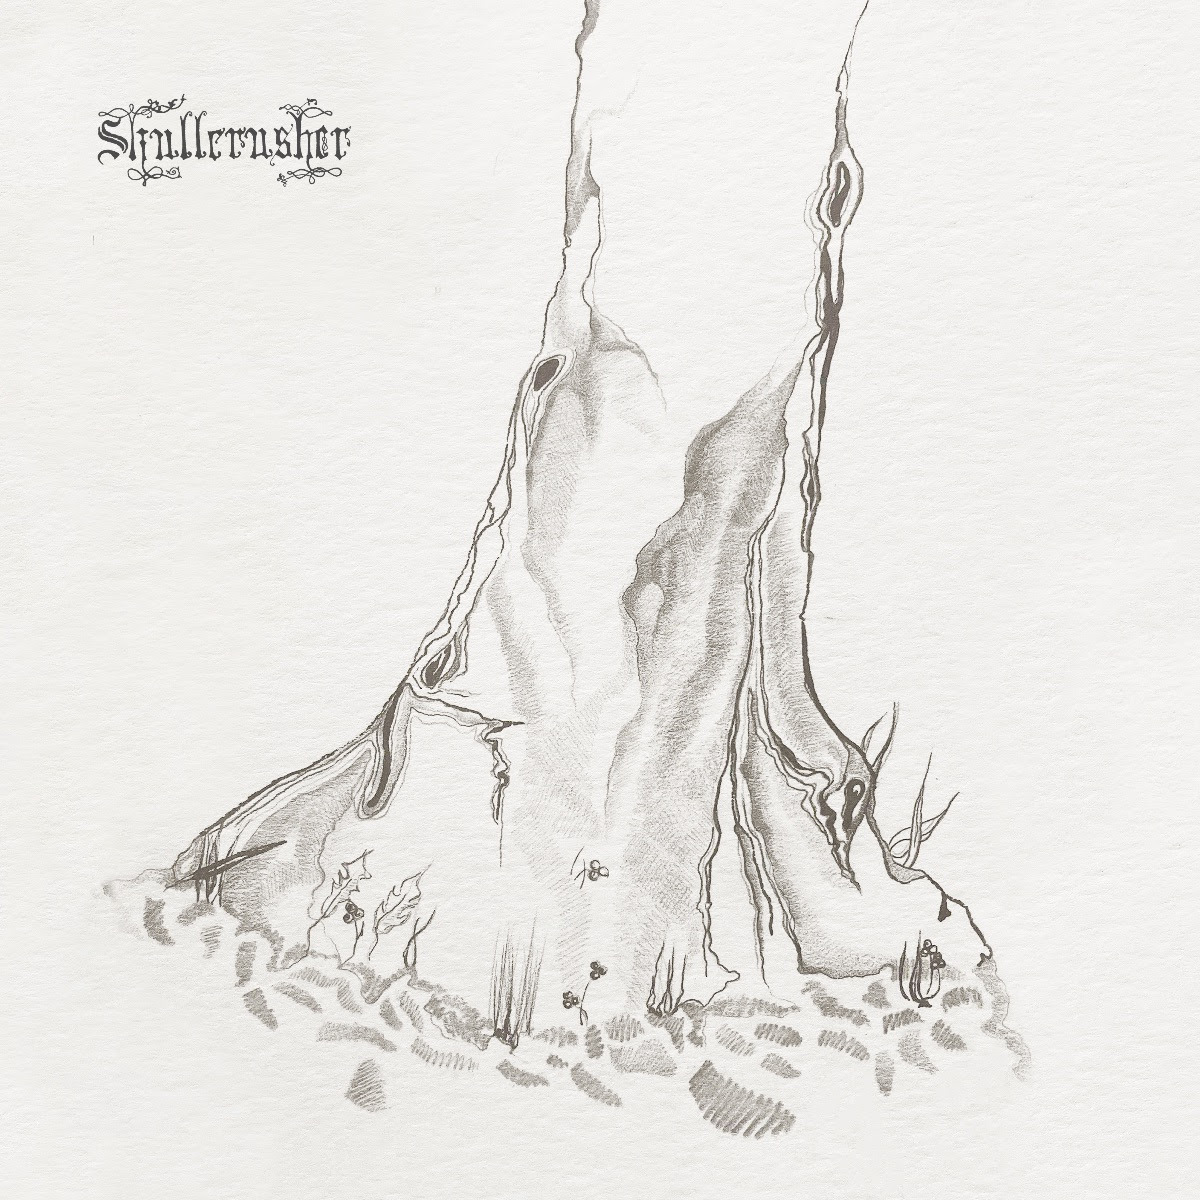 Skullcrusher Storm in Summer - EP cover artwork